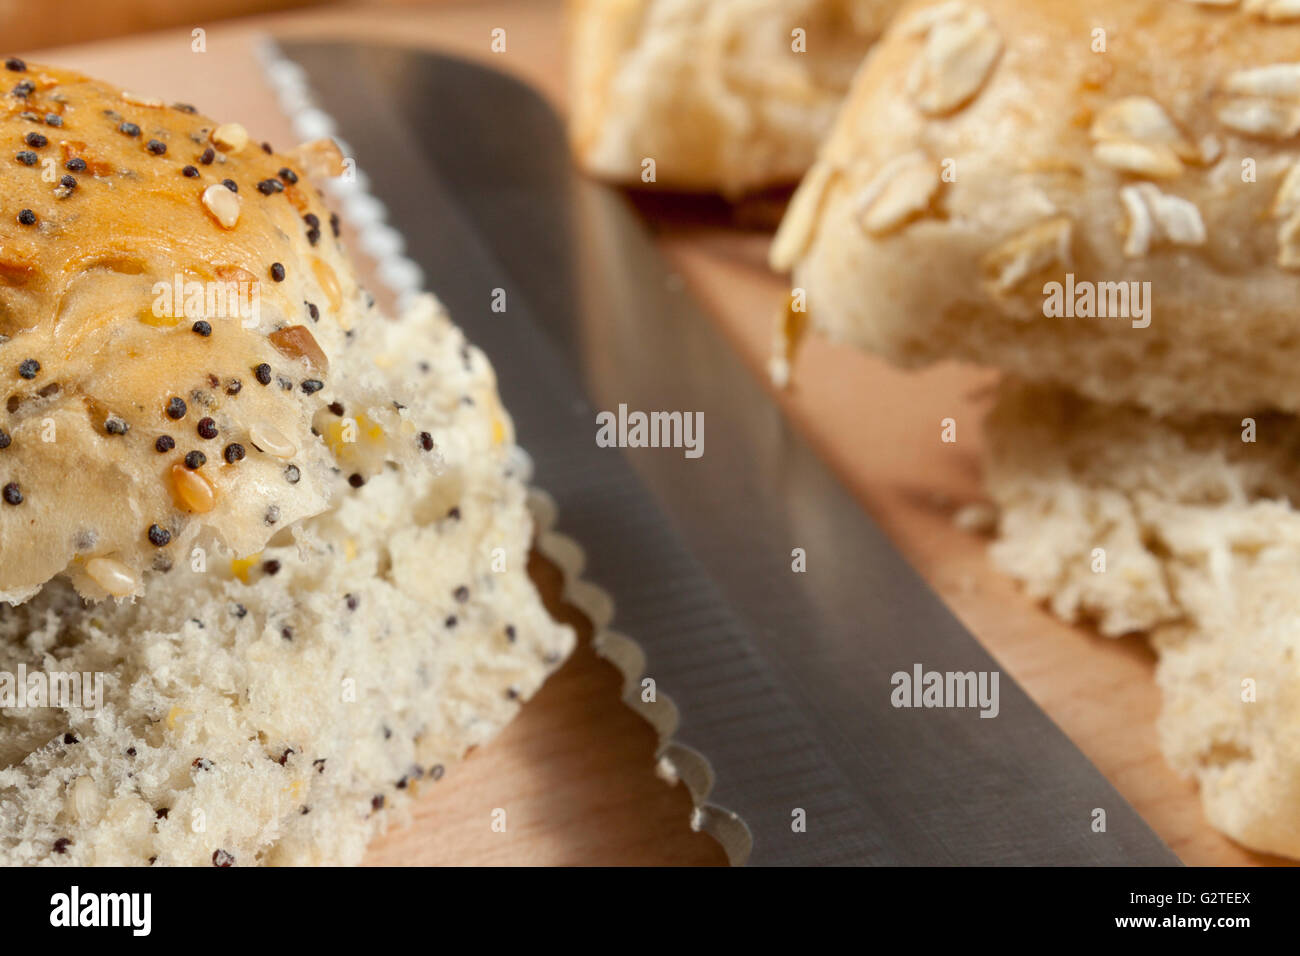 Petits pains d'avoine ensemencée fixant à côté d'un couteau sur un plan de travail de cuisine Banque D'Images